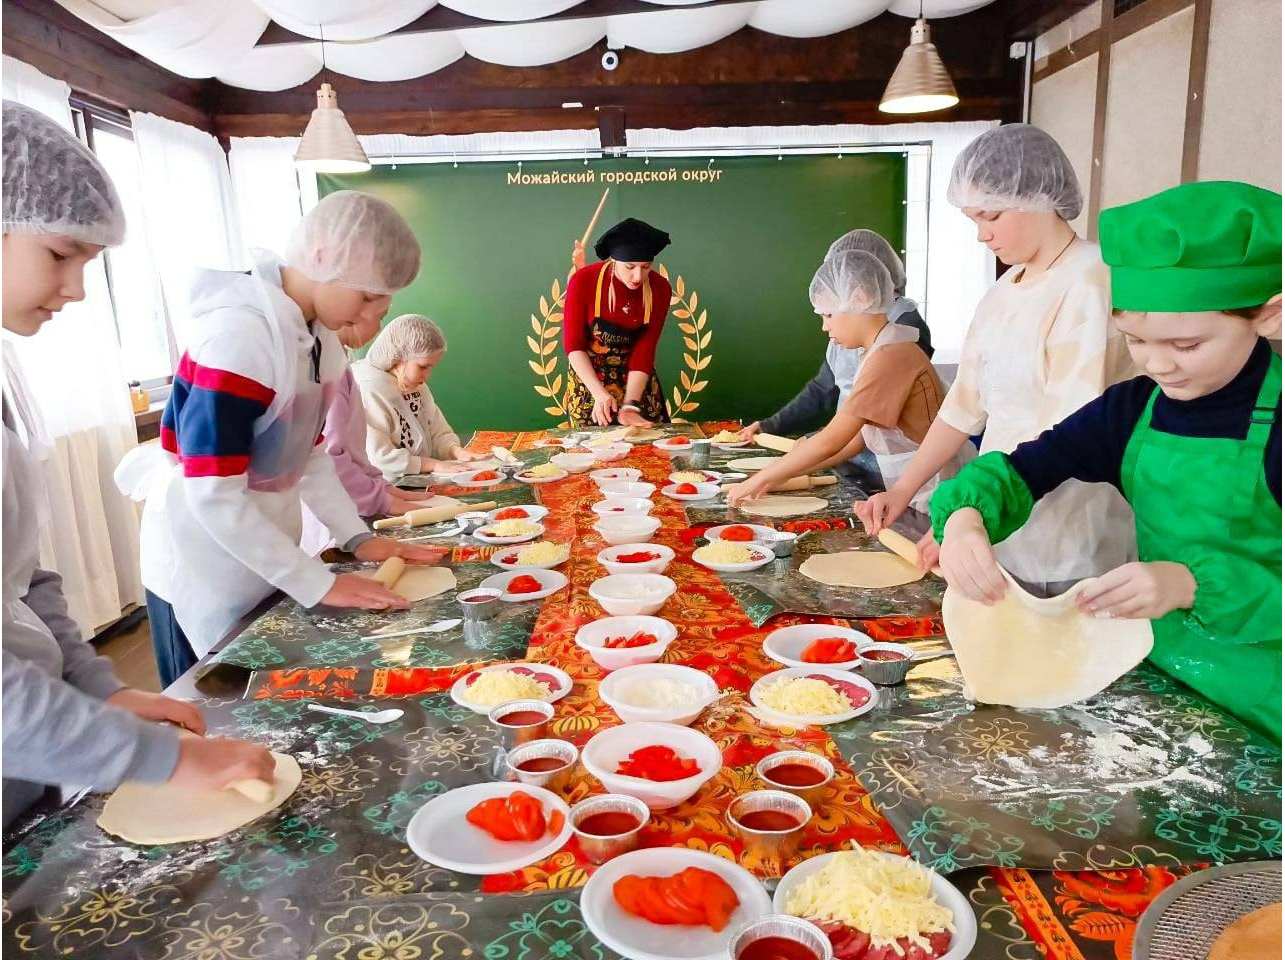 Детей участников спецоперации научили готовить пиццу на кулинарном мастер-классе в Можайске